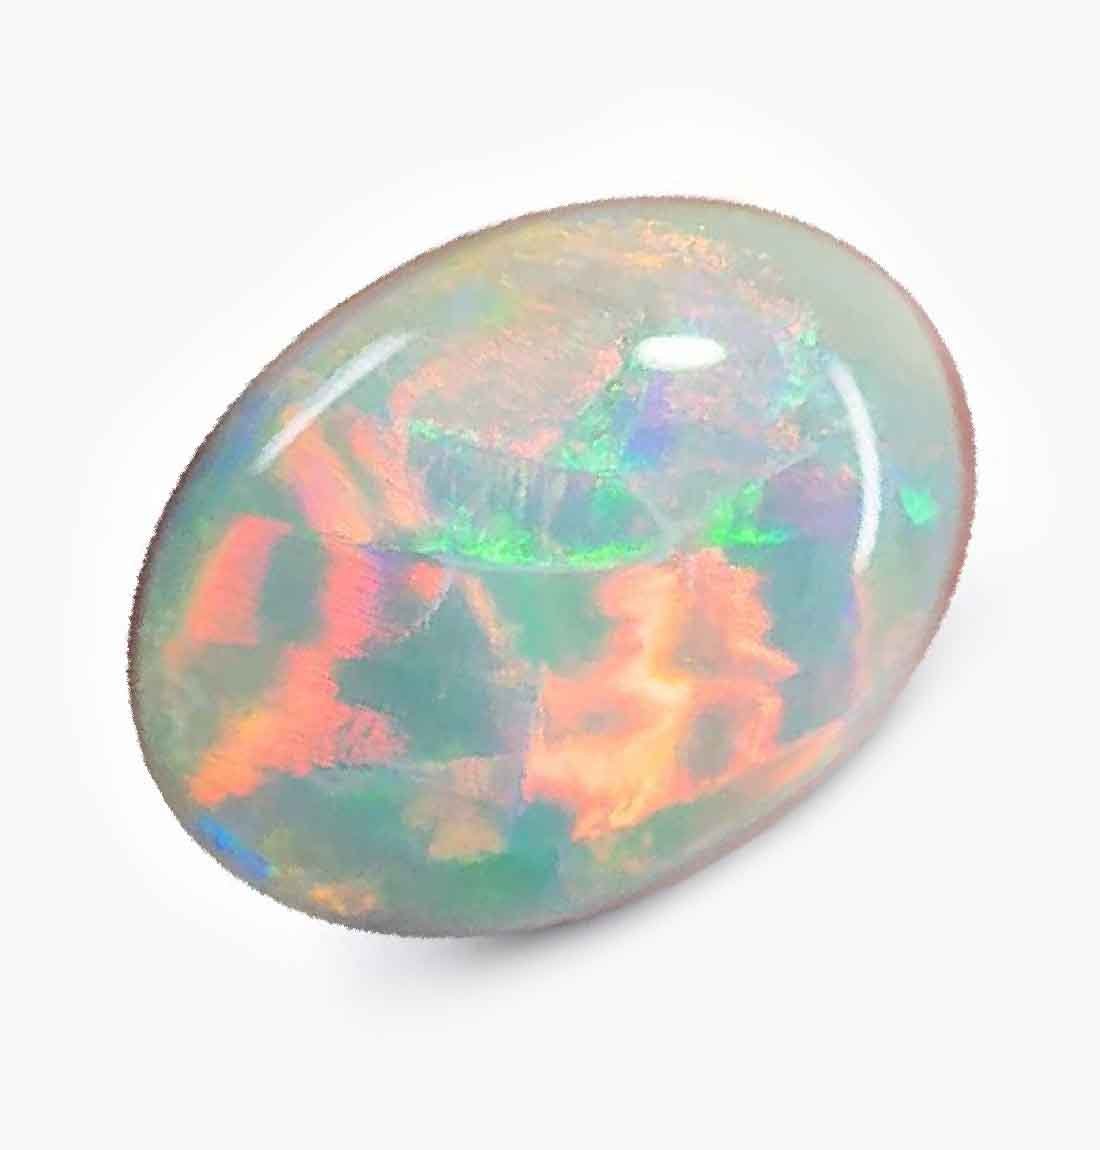 opal-Gemstone-Tajmahal-Gems-World-001 (2)